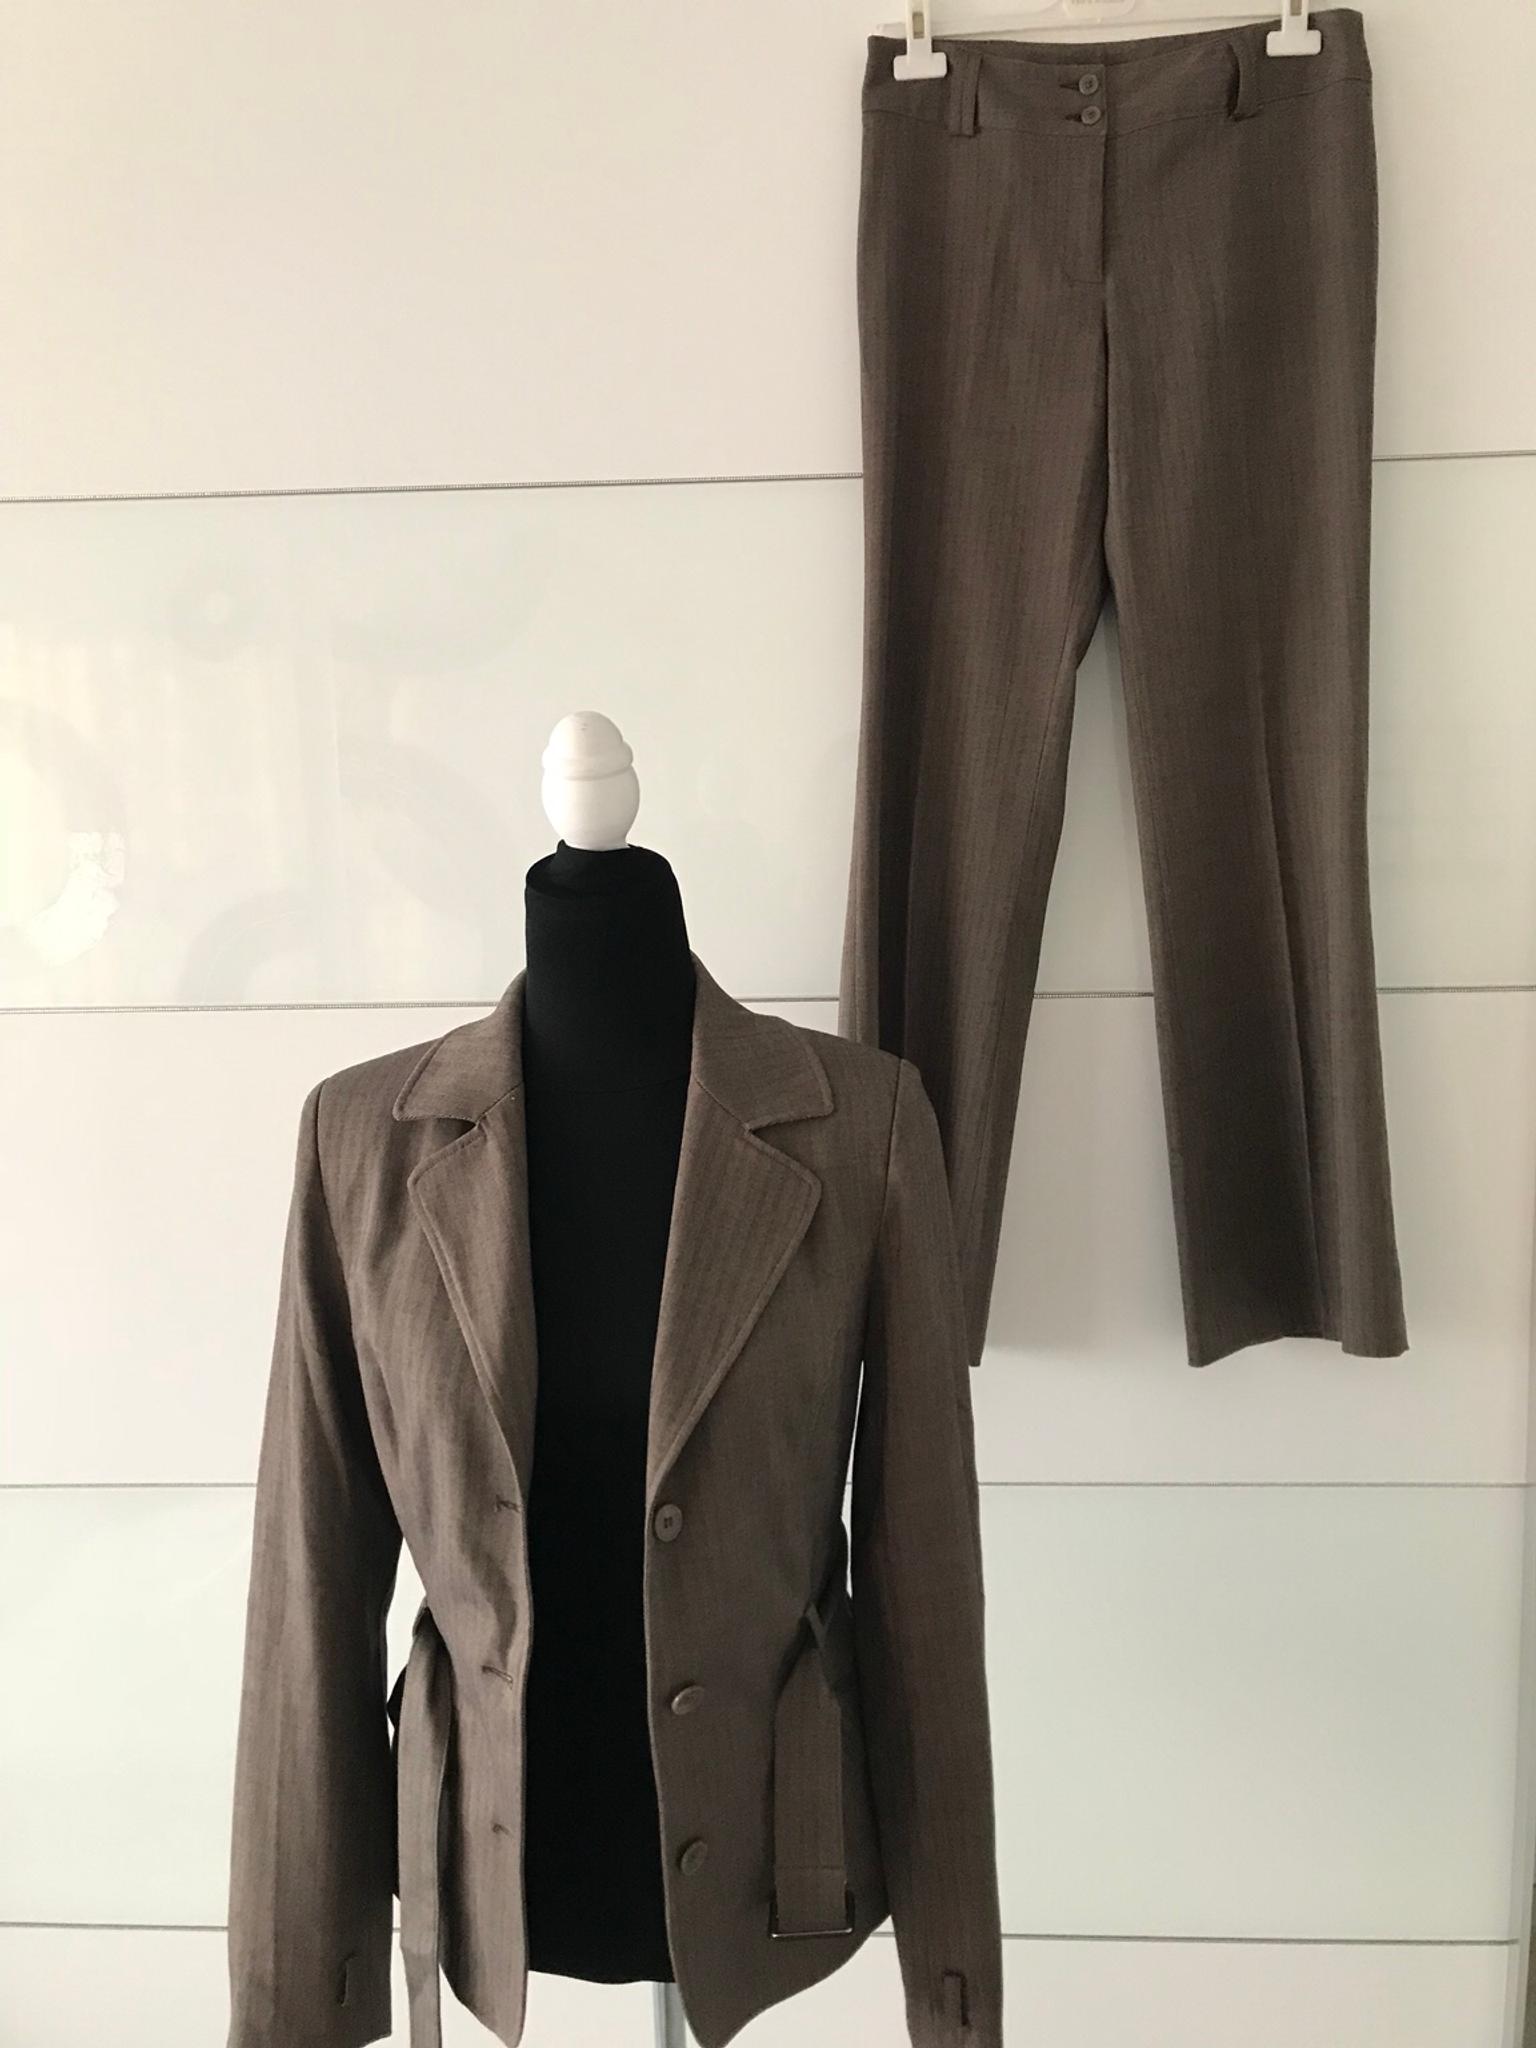 Zweiteiliges Damen Anzug In Nurnberg Fur 52 00 Zum Verkauf Shpock At